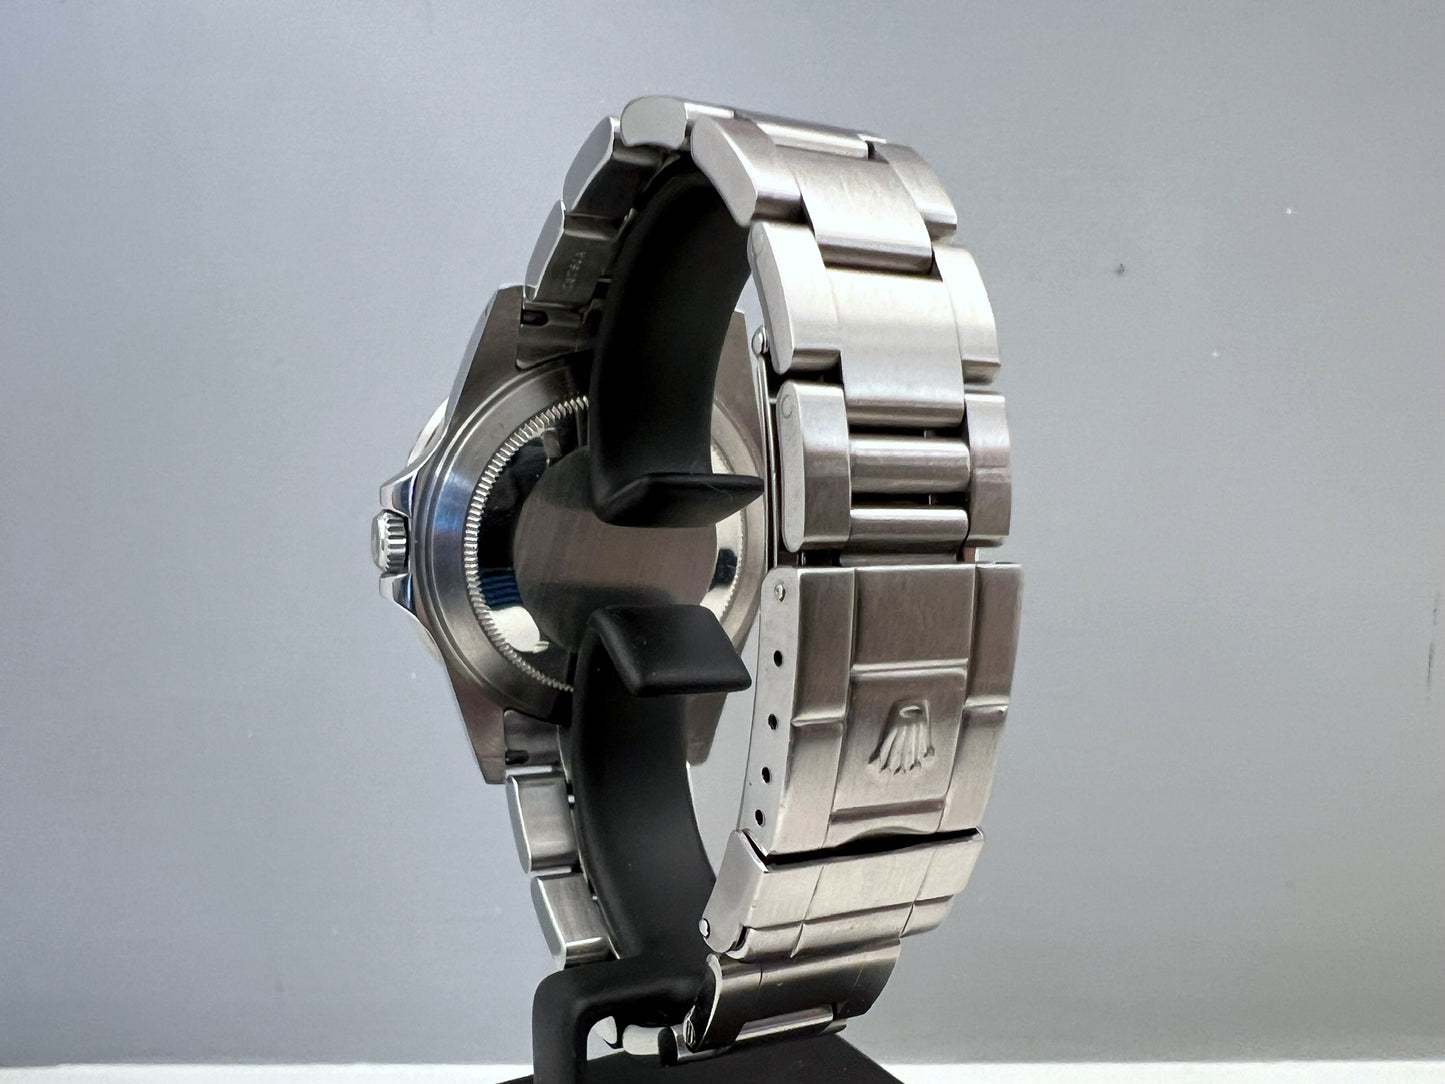 RoleX GMT 16710 Full set SEL bracelet